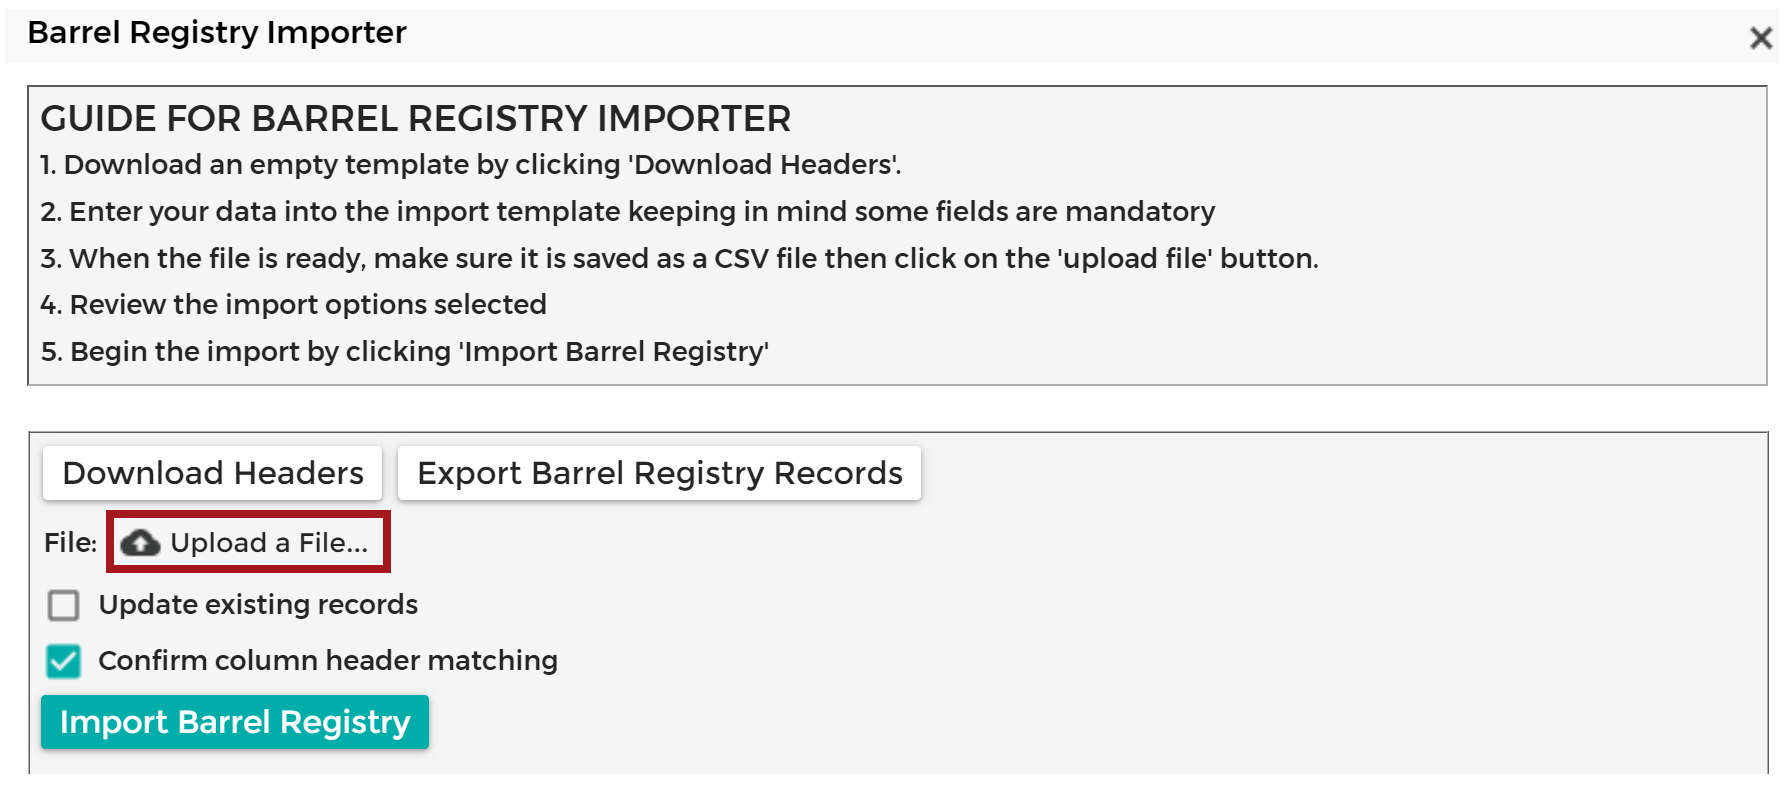 Barrel_Registry_Importer_-_Upload_File_20200428.png